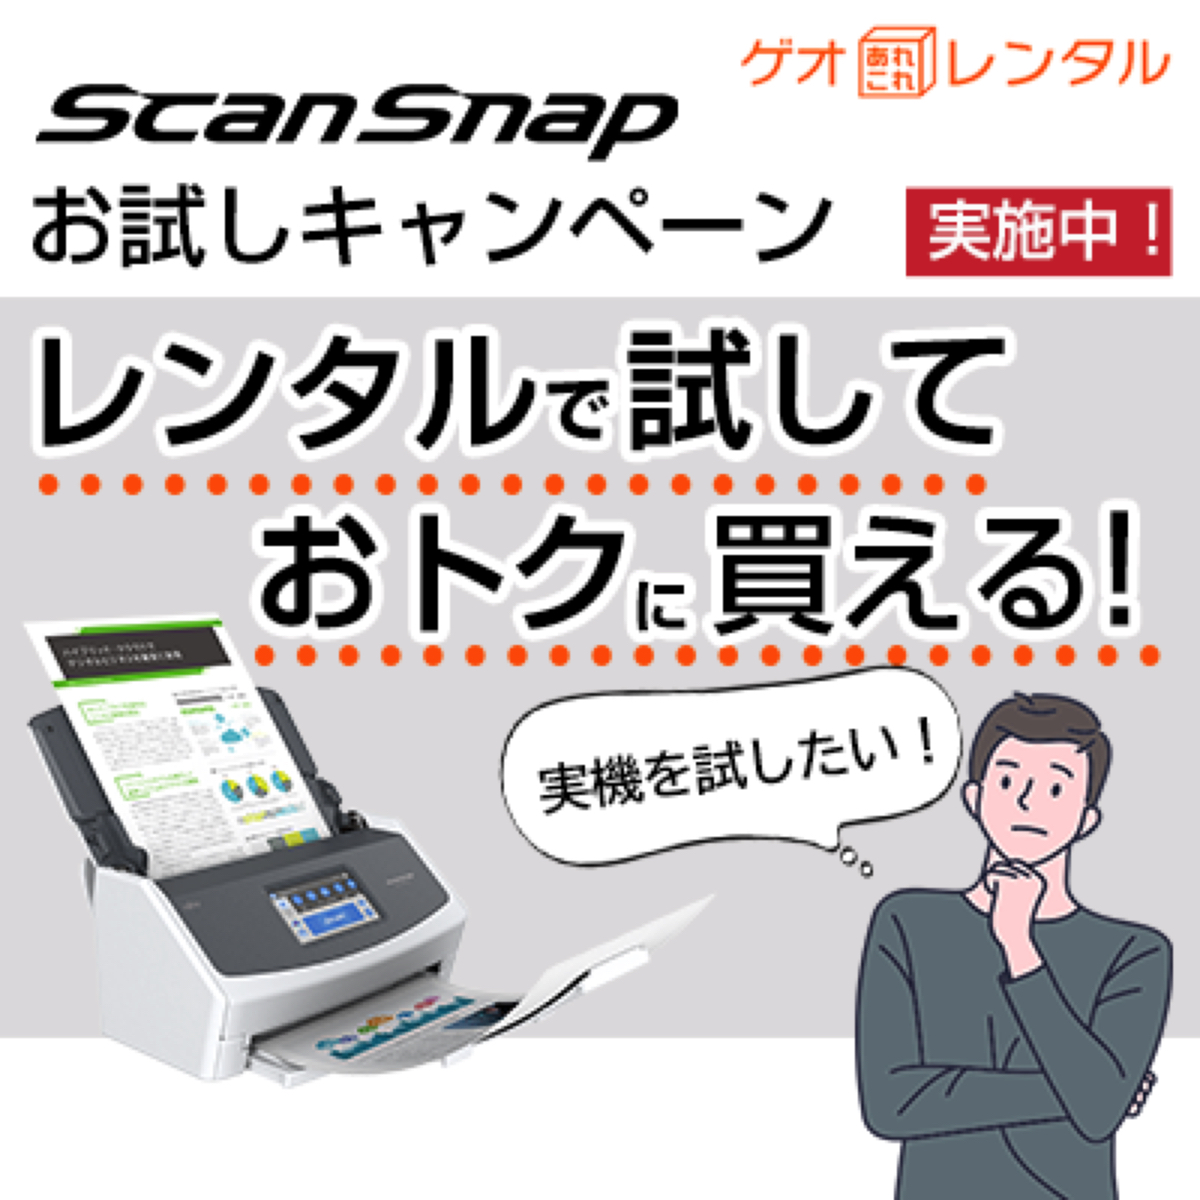 『ScanSnap』レンタルサービス開始